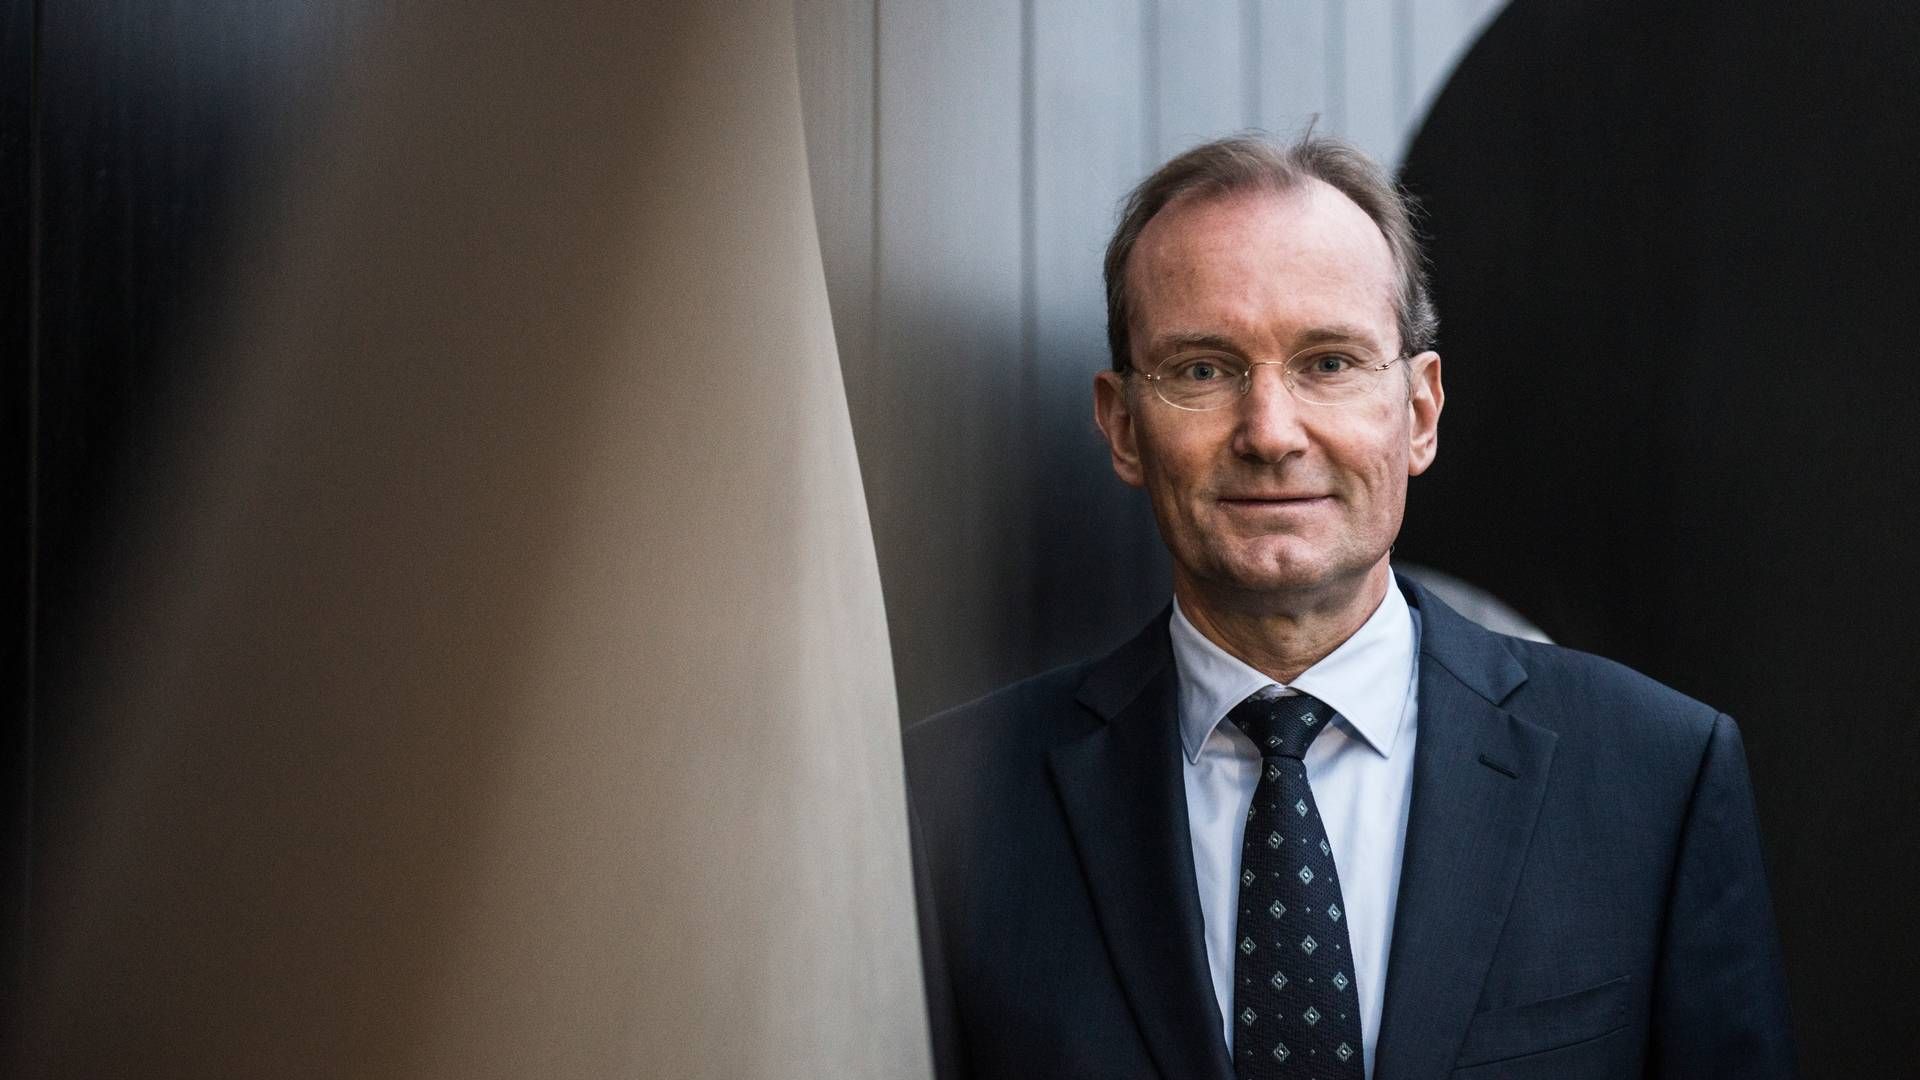 Niels Smedegaard er udnævnt som formand i et nyt råd med titlen "Virksomhedsforum for globale risici." | Foto: Casper Holmenlund Christensen/Jyllands-Posten/Ritzau Scanpix